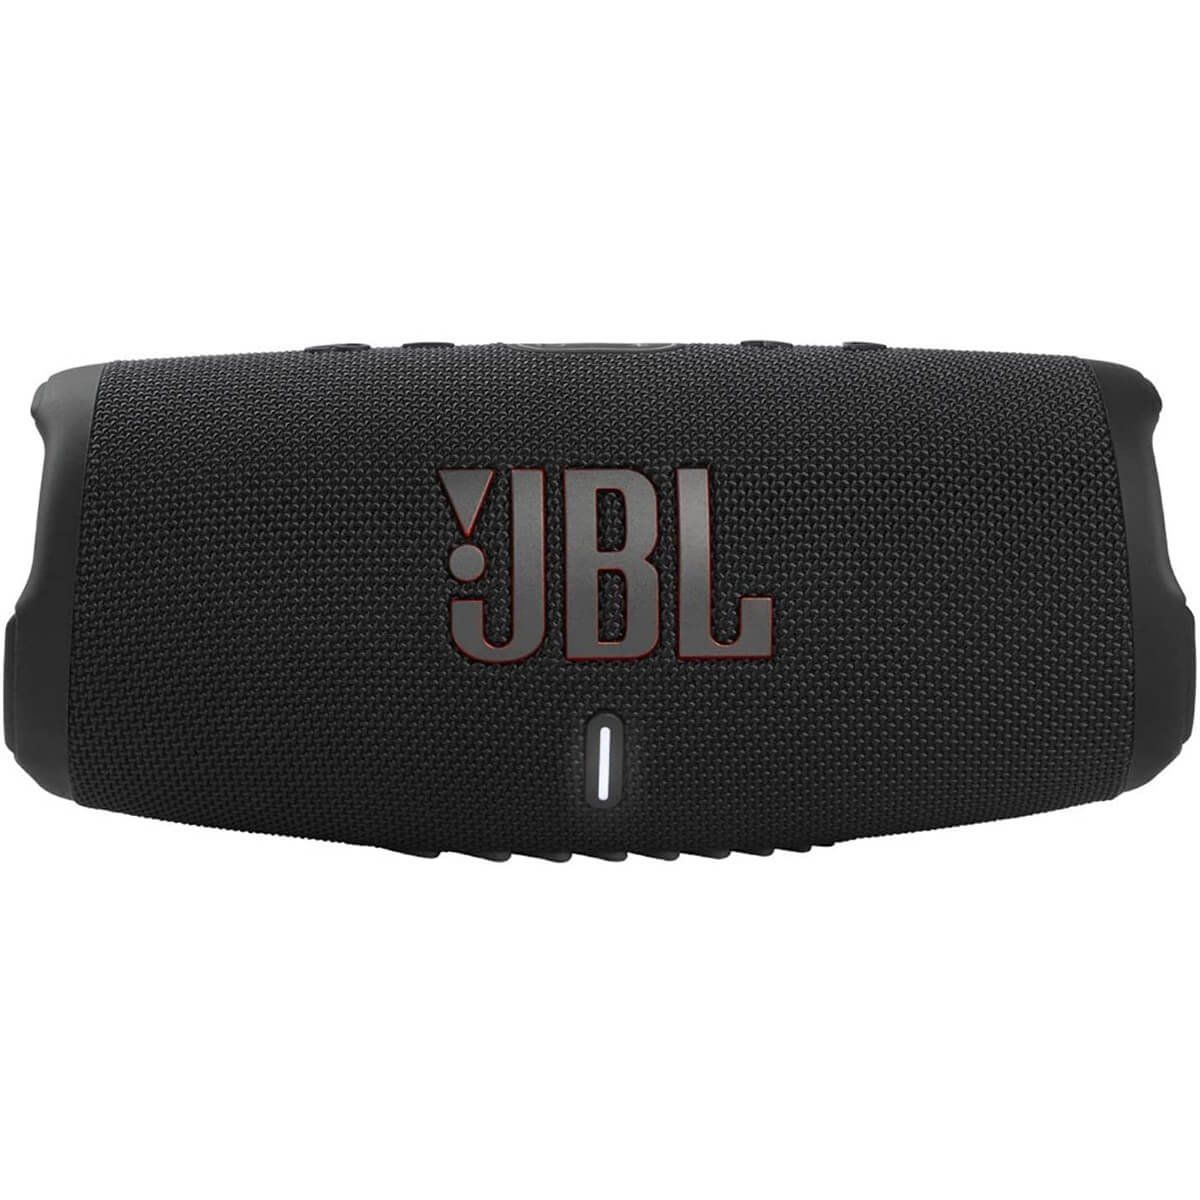 Loa JBL Charge 5